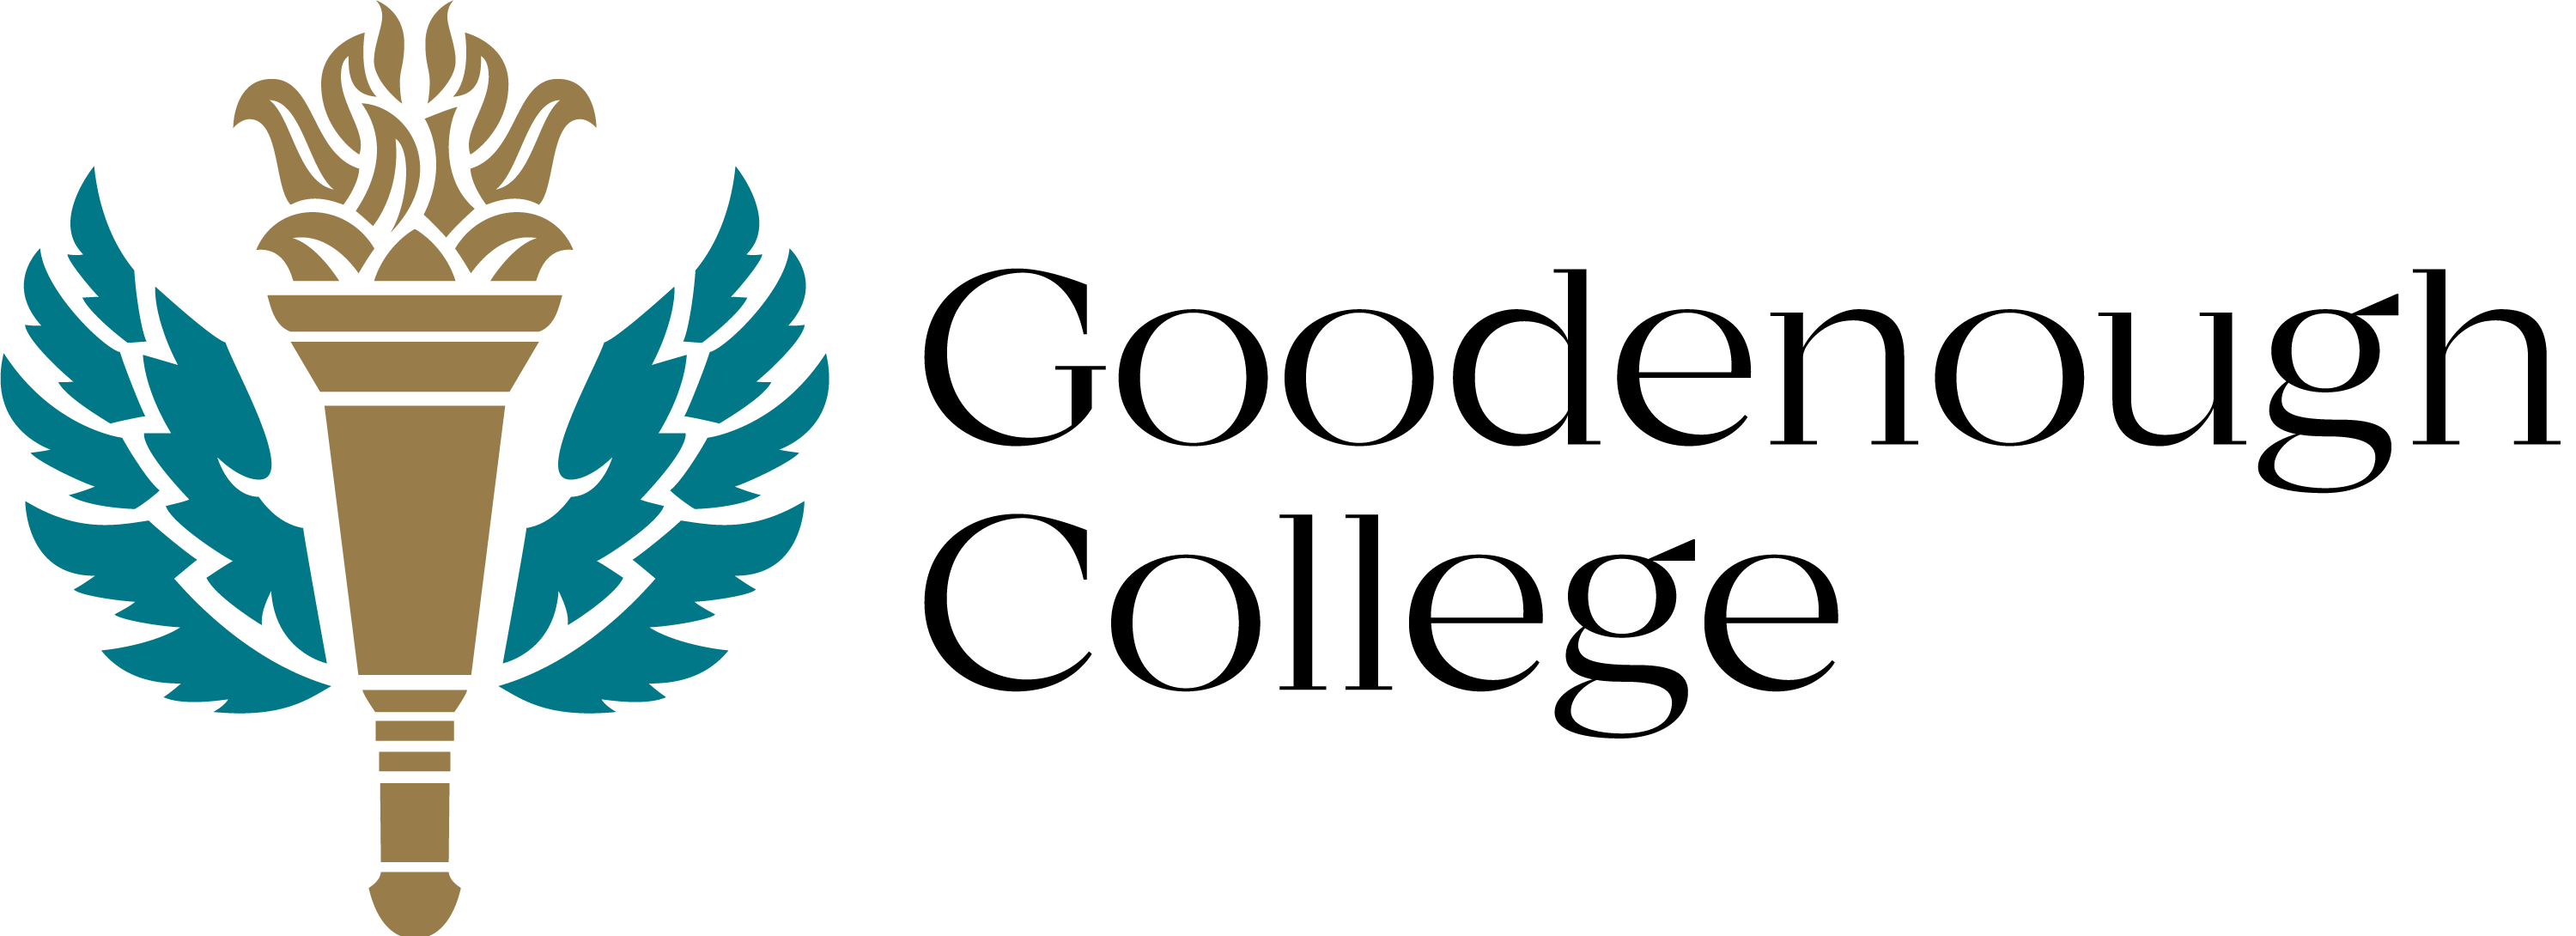 goodenough_college